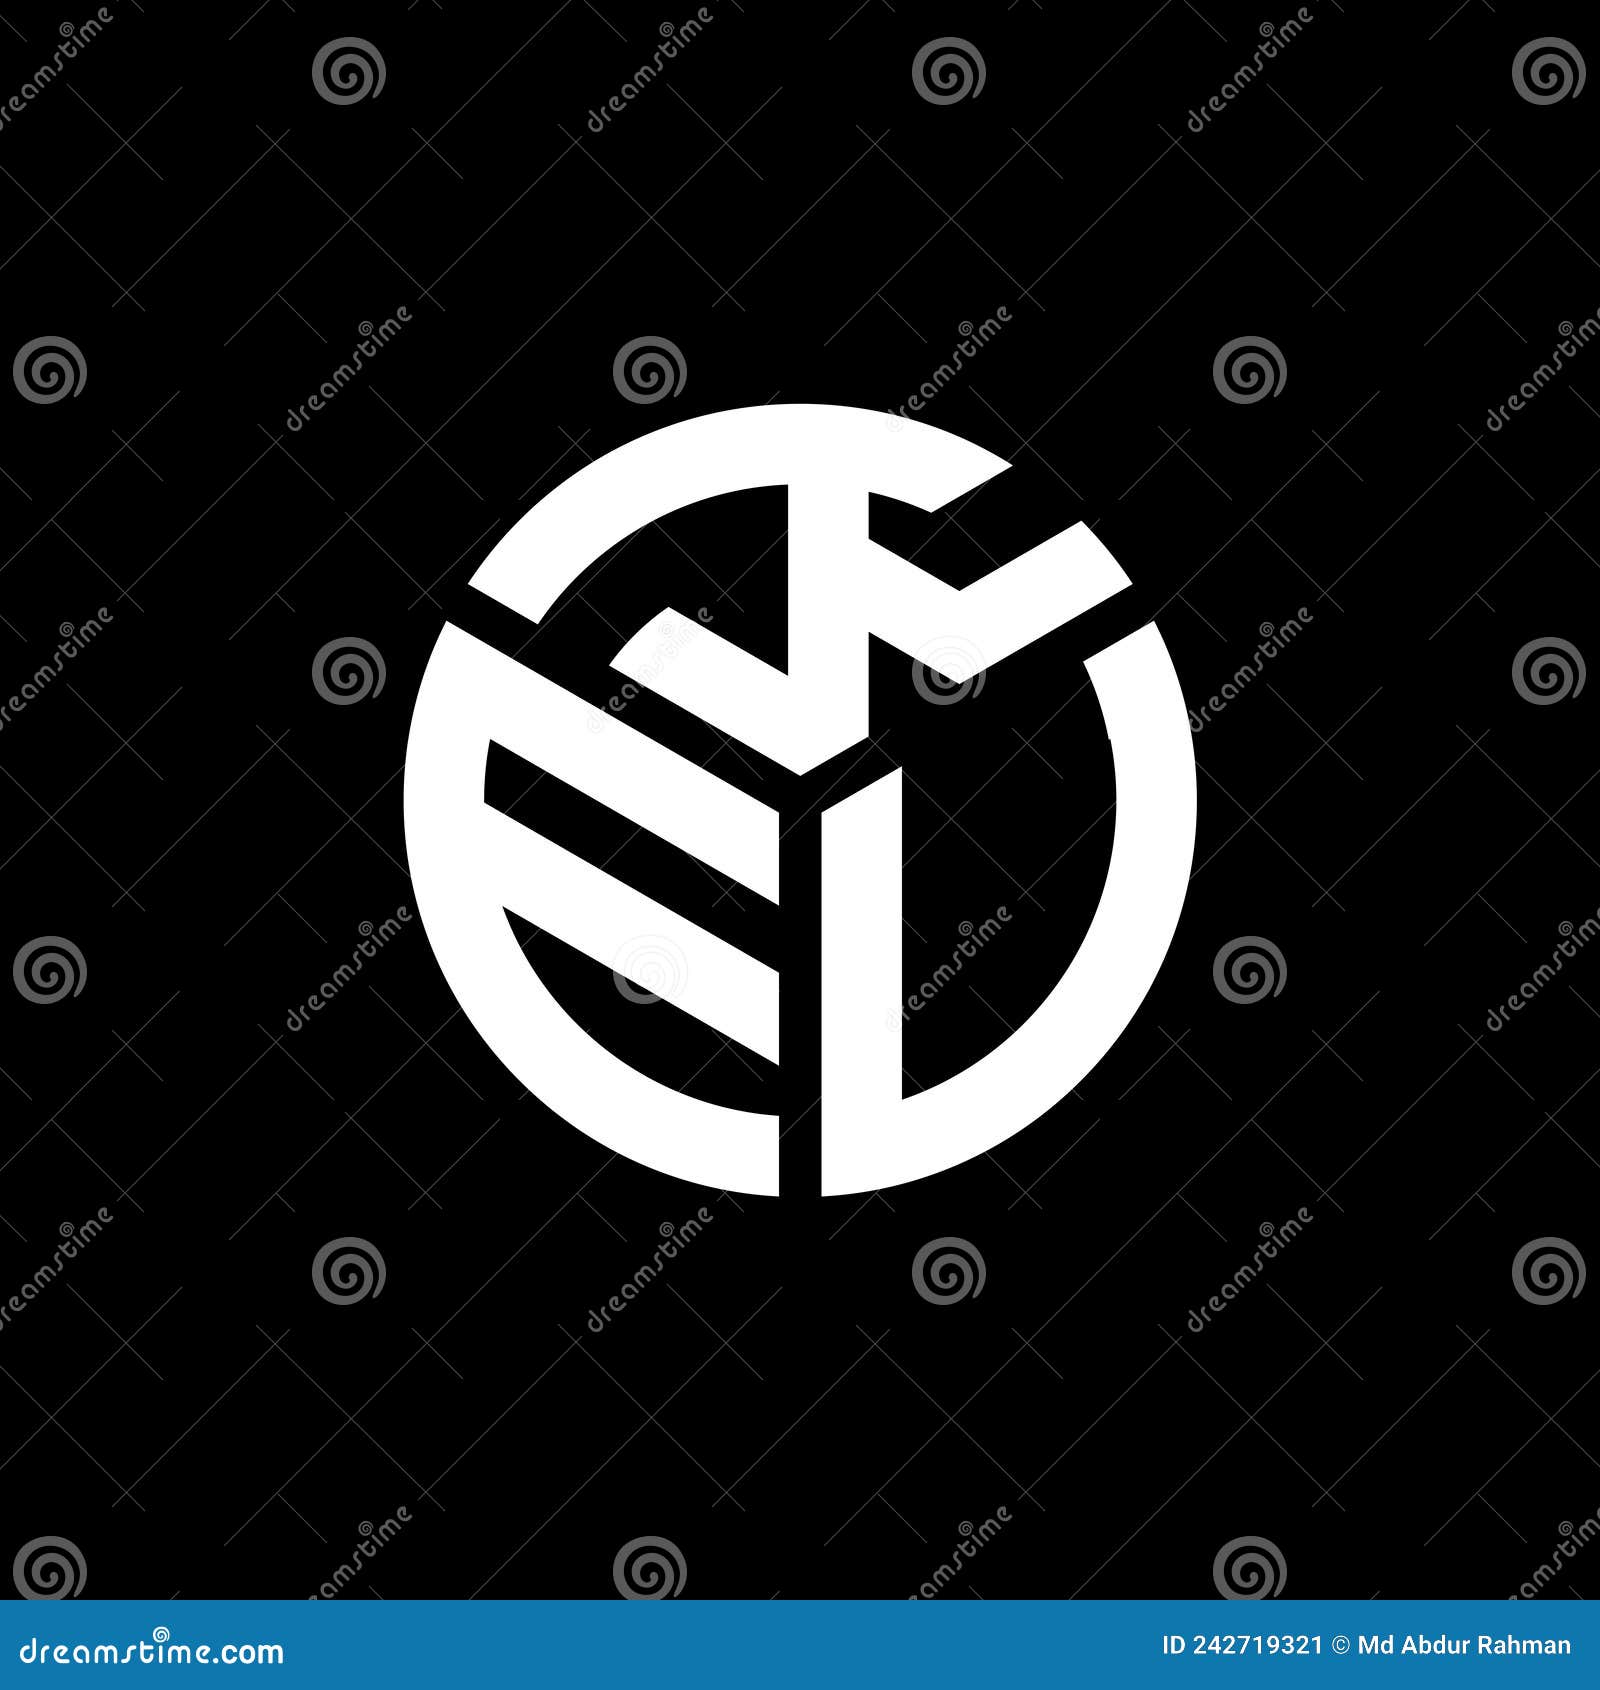 keu letter logo  on black background. keu creative initials letter logo concept. keu letter 